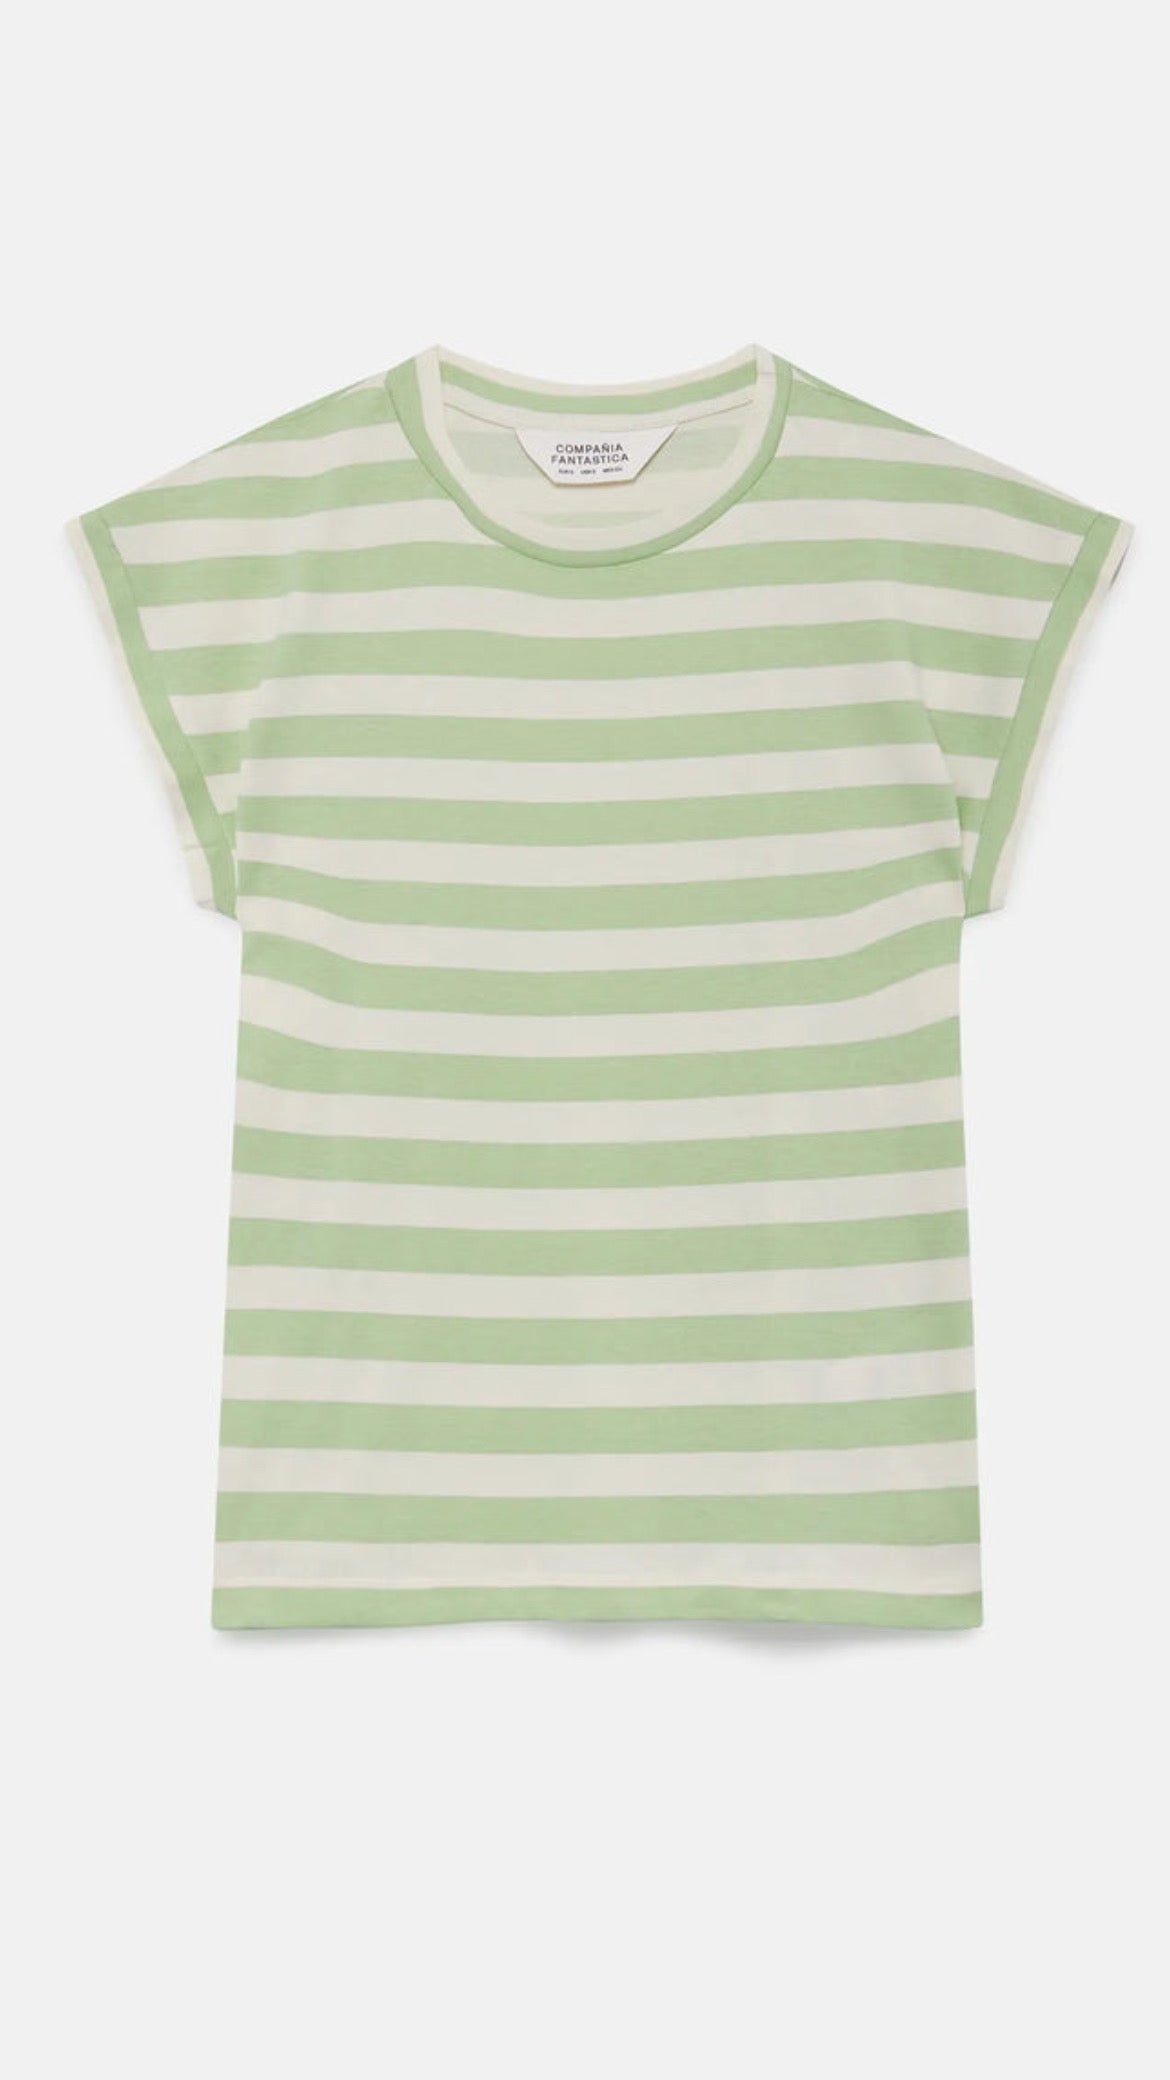 Camiseta manga corta rayas verde